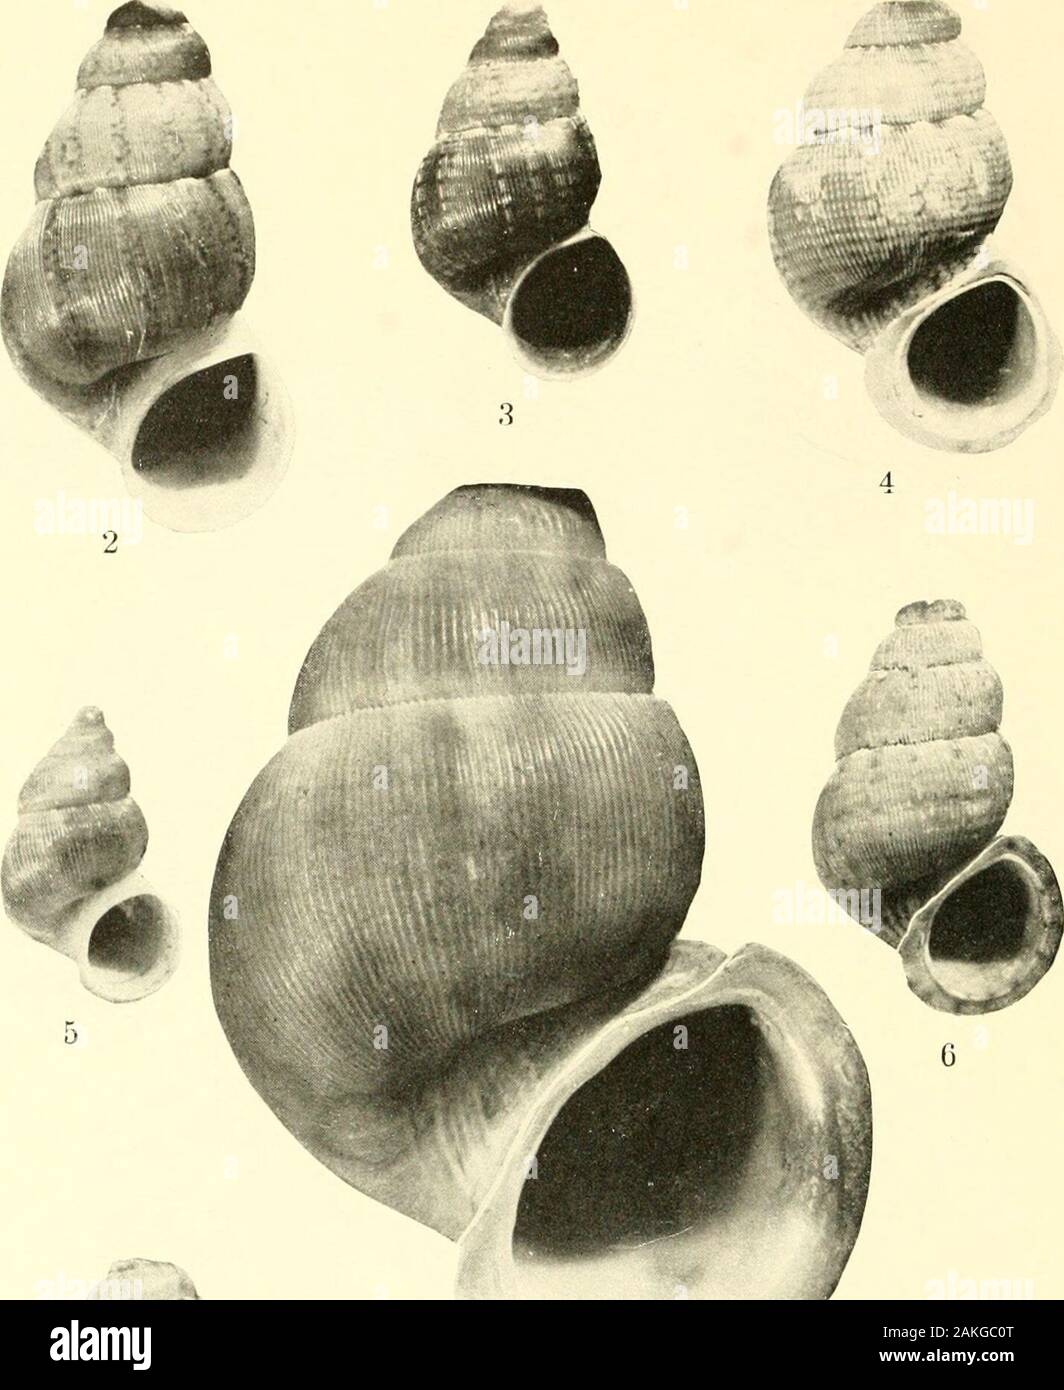 Boletín - Museo Nacional de los Estados Unidos . 1) .Chondroloiiiiiiin Chondropoina (supcrbum Henderson y Simpson; 2, C. (C.) eusarcum puertoplatcnse, nuevas subespecies; 3, C. (C.) beatense aprietan; 4, C. (C.) eusarcum catalinitensc, nuevas subespecies; 5, C. (C.) e. eusarcum (Pfeiffer); 6, C. (C.) niaeqvUa-Brum, nuevas especies; 7, C. (C.) ignotnin, nuevas especies. U. S. National Museum ULLETIN PLACA 192 6. ^ ^^%A&lt;v M Foto de stock